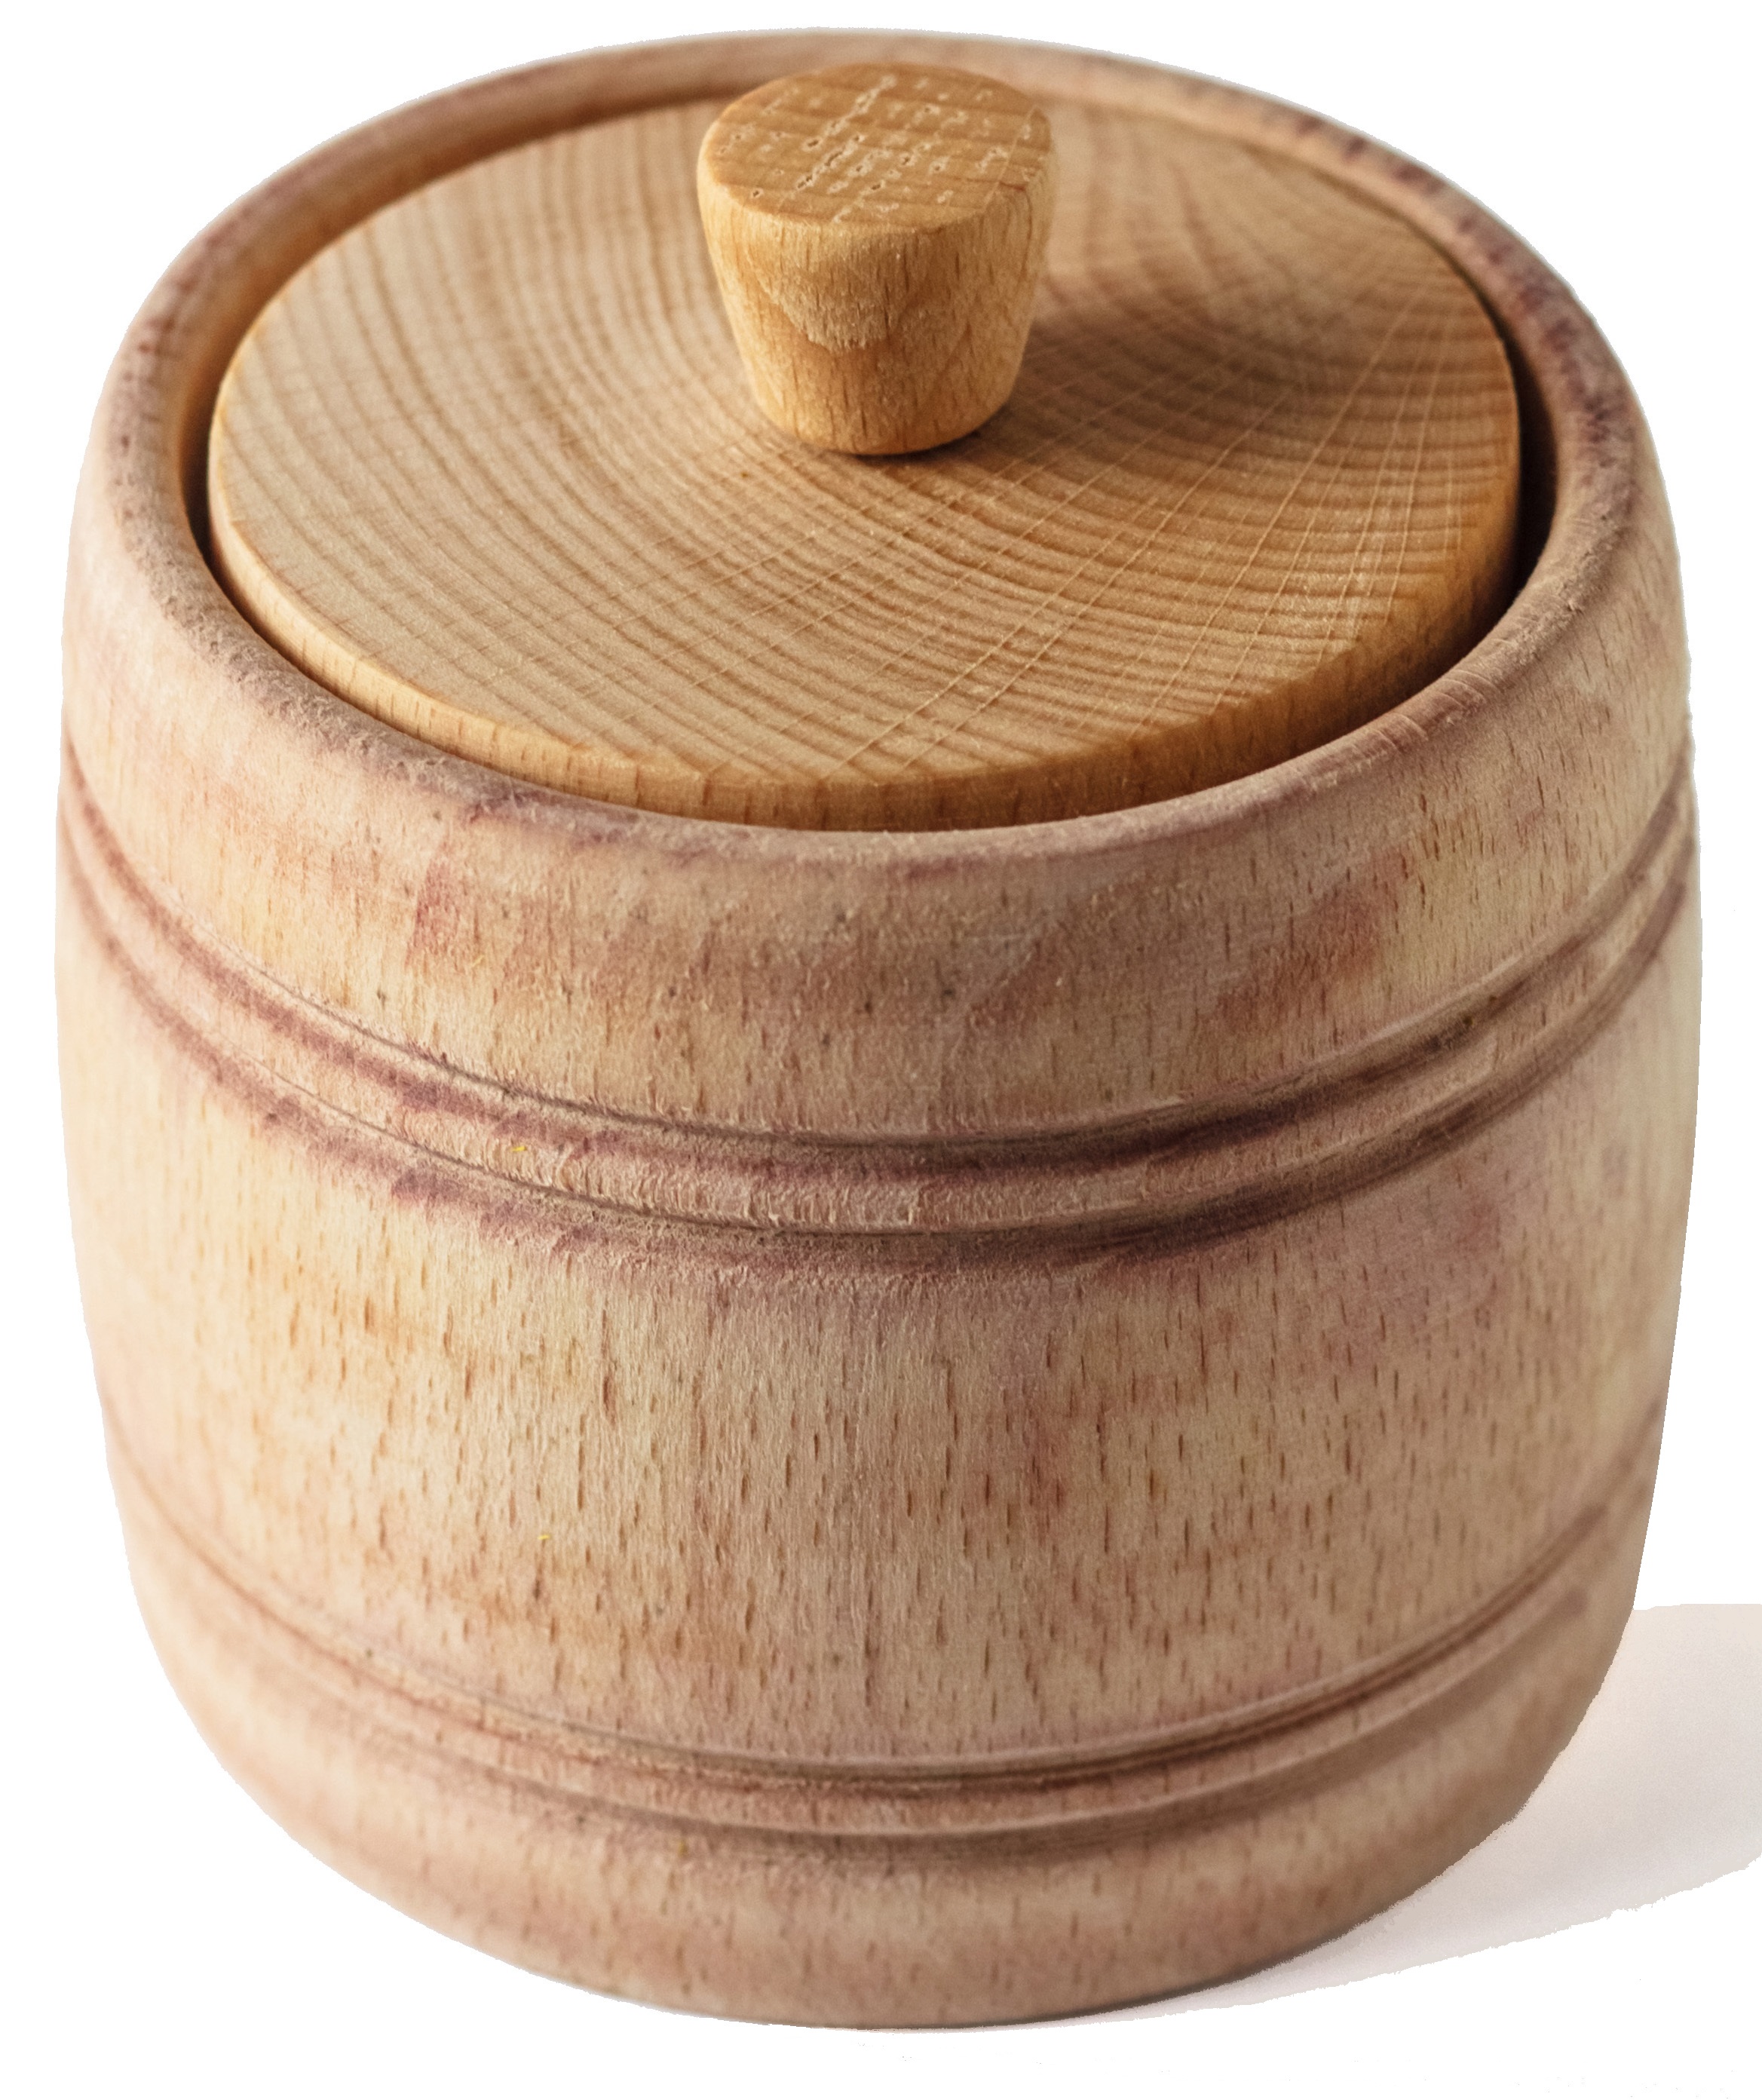 Wooden Salt Box – ECOSALL